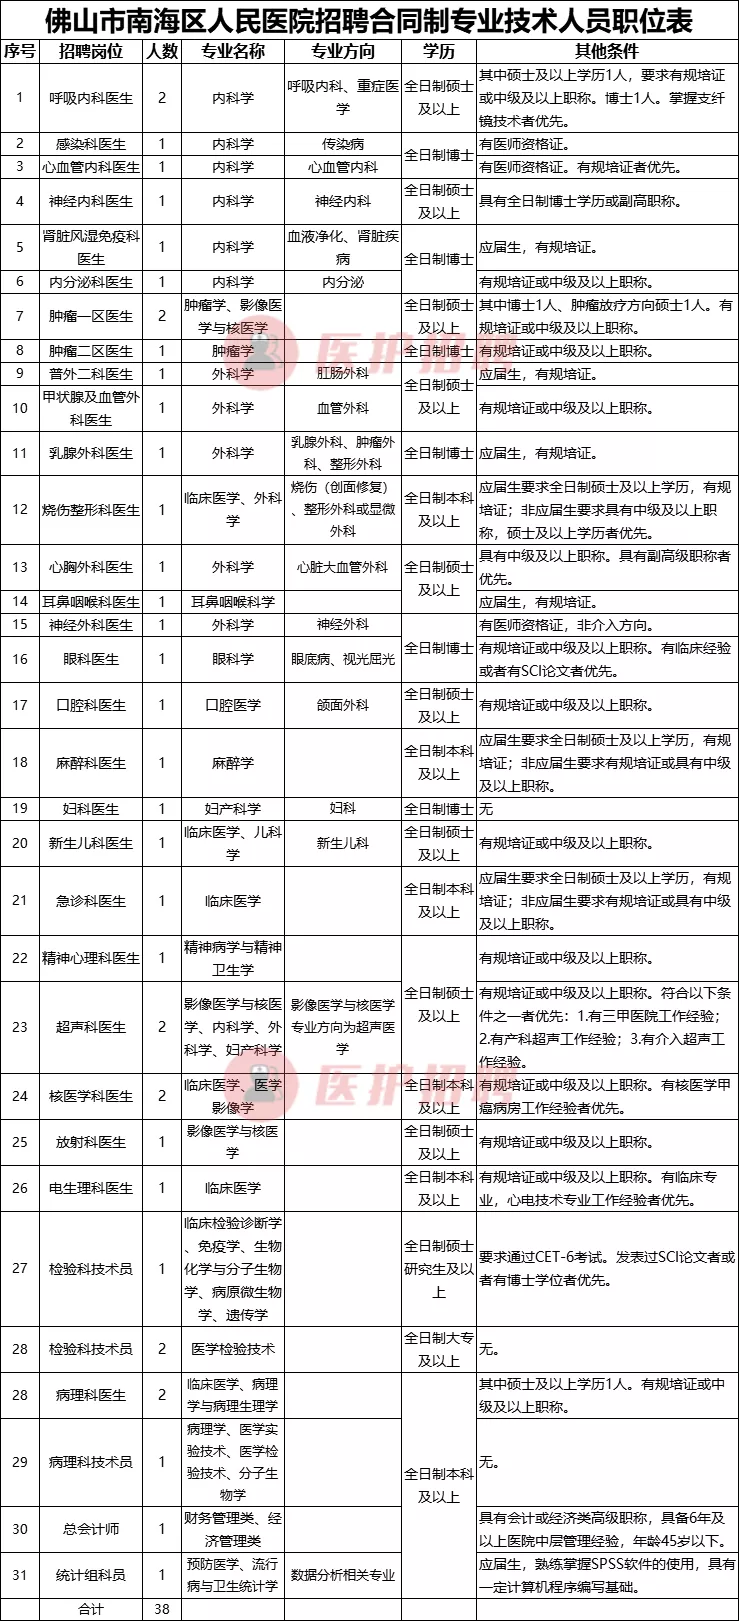 「广东」 佛山市南海区人民医院，2020年招聘医生、医技等38人